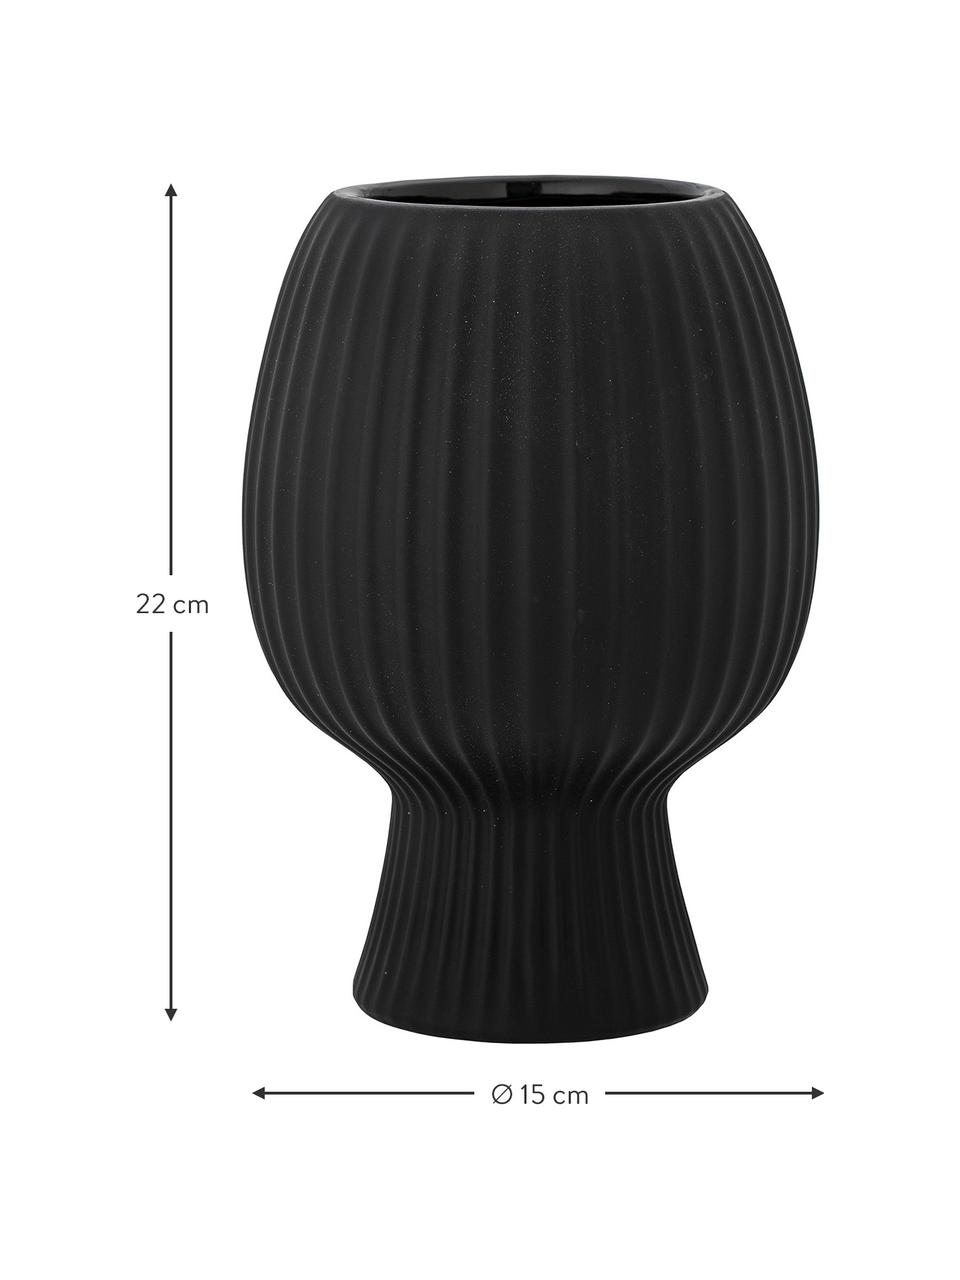 Vaas Dagny van keramiek in zwart, Keramiek, Zwart, Ø 15 x H 22 cm